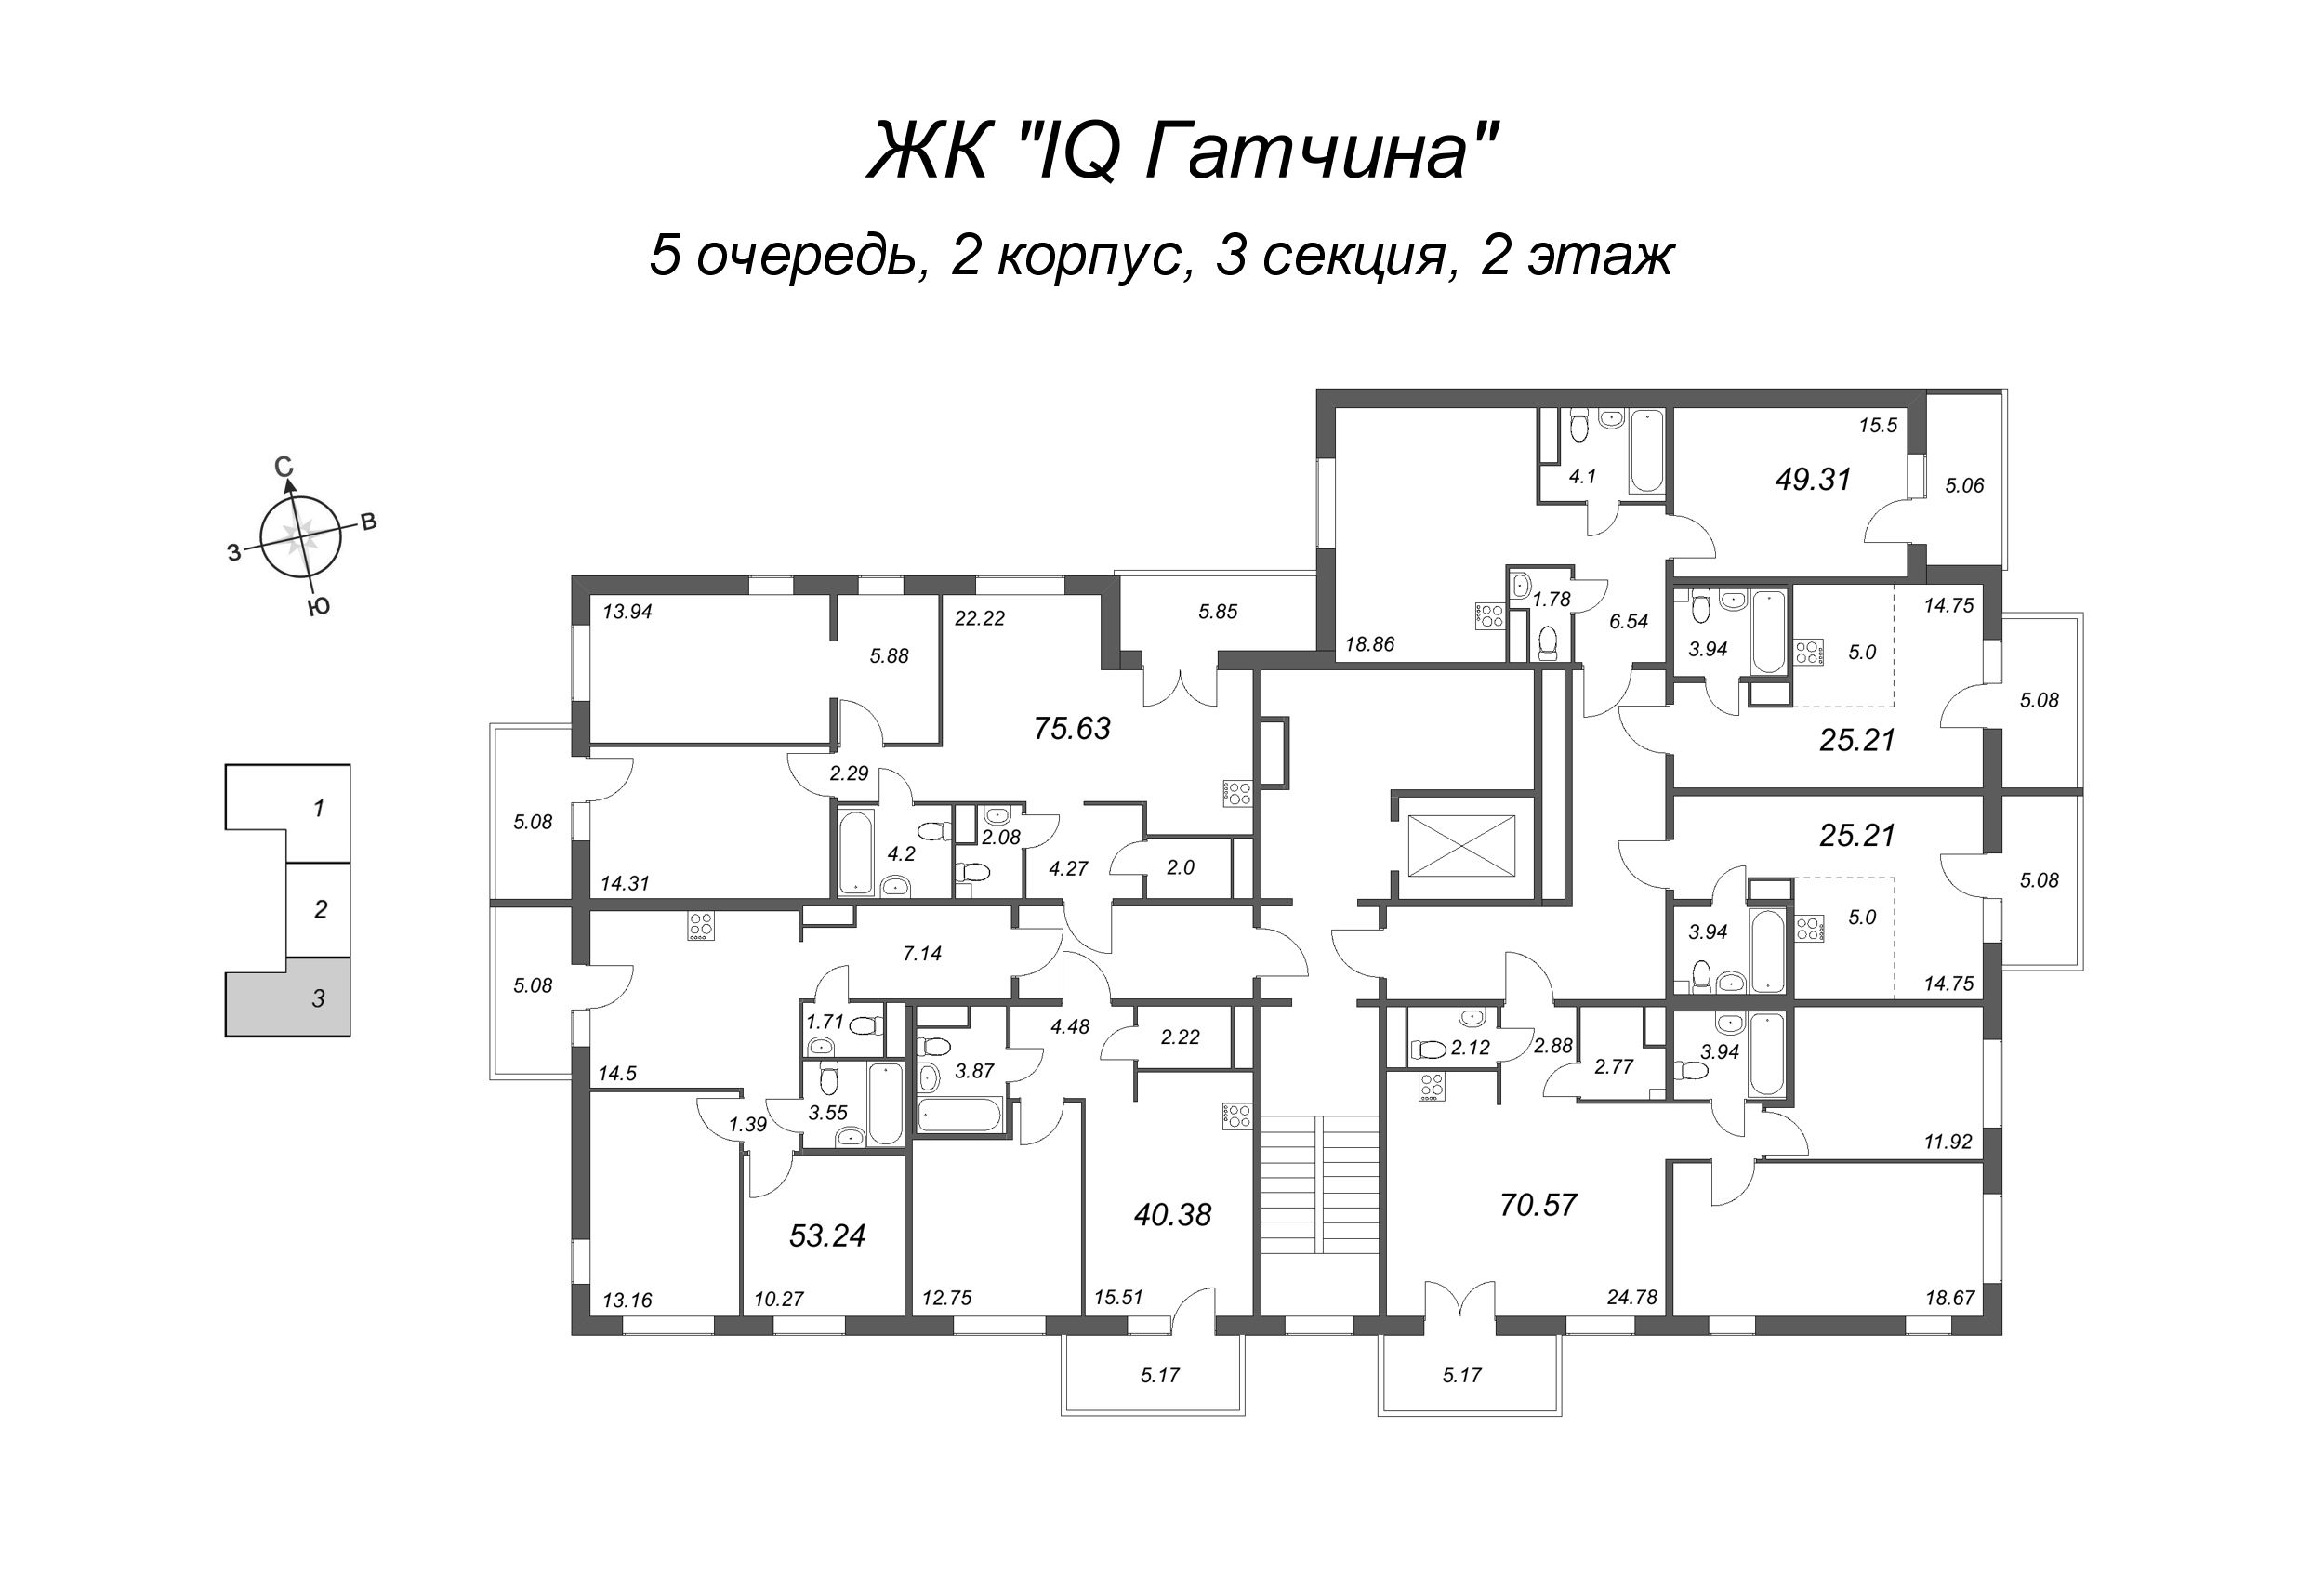 2-комнатная (Евро) квартира, 44 м² в ЖК "IQ Гатчина" - планировка этажа